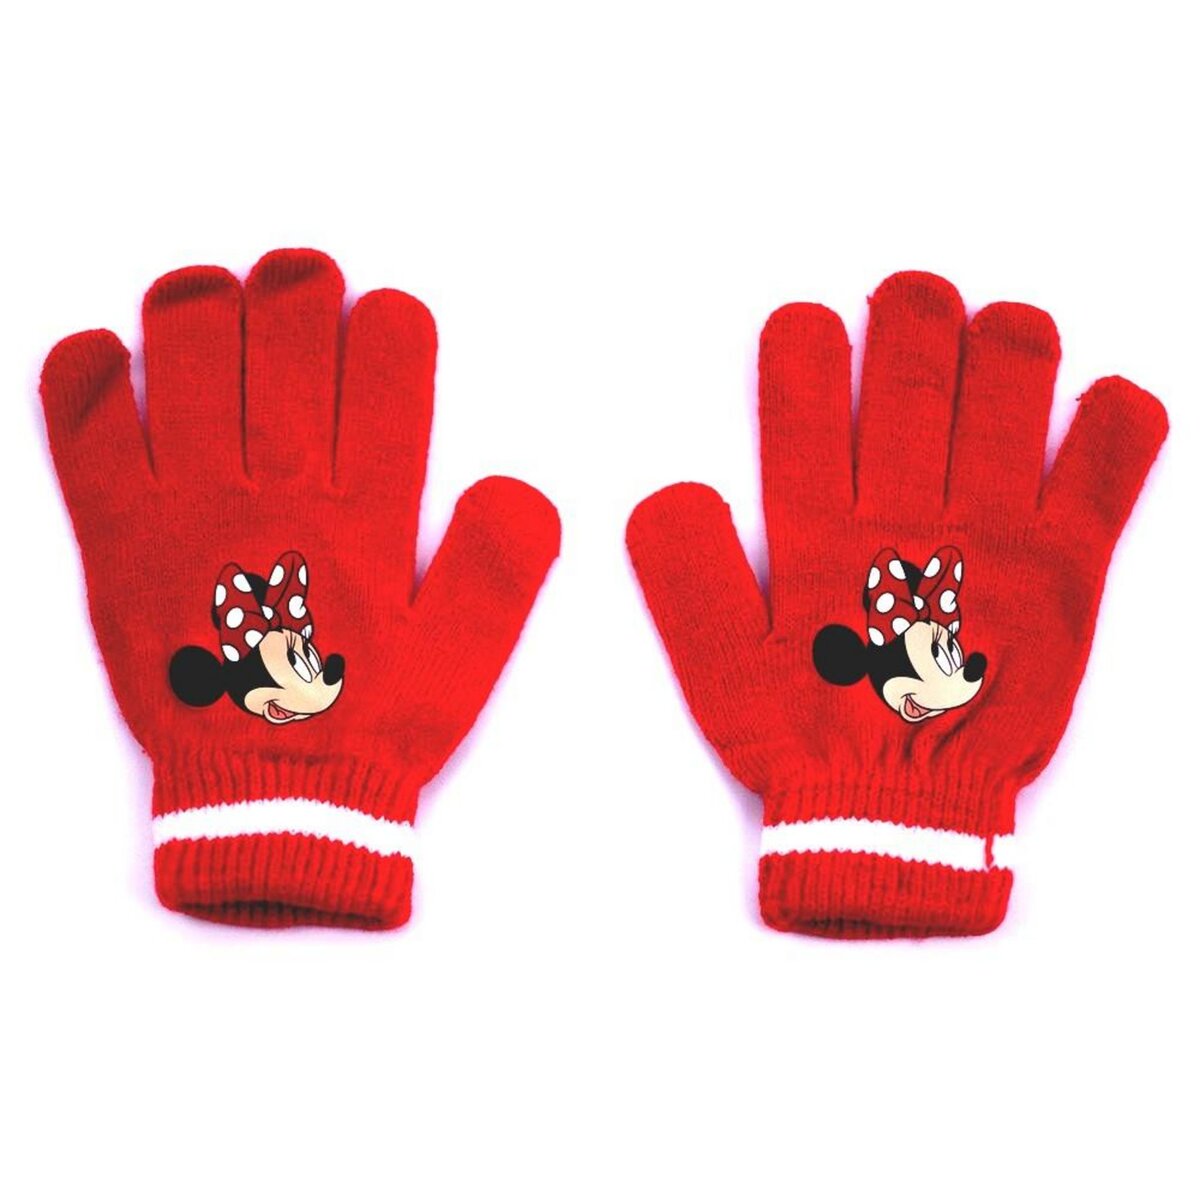 1 paire de gant hiver Minnie Mouse enfant fille gants pas cher